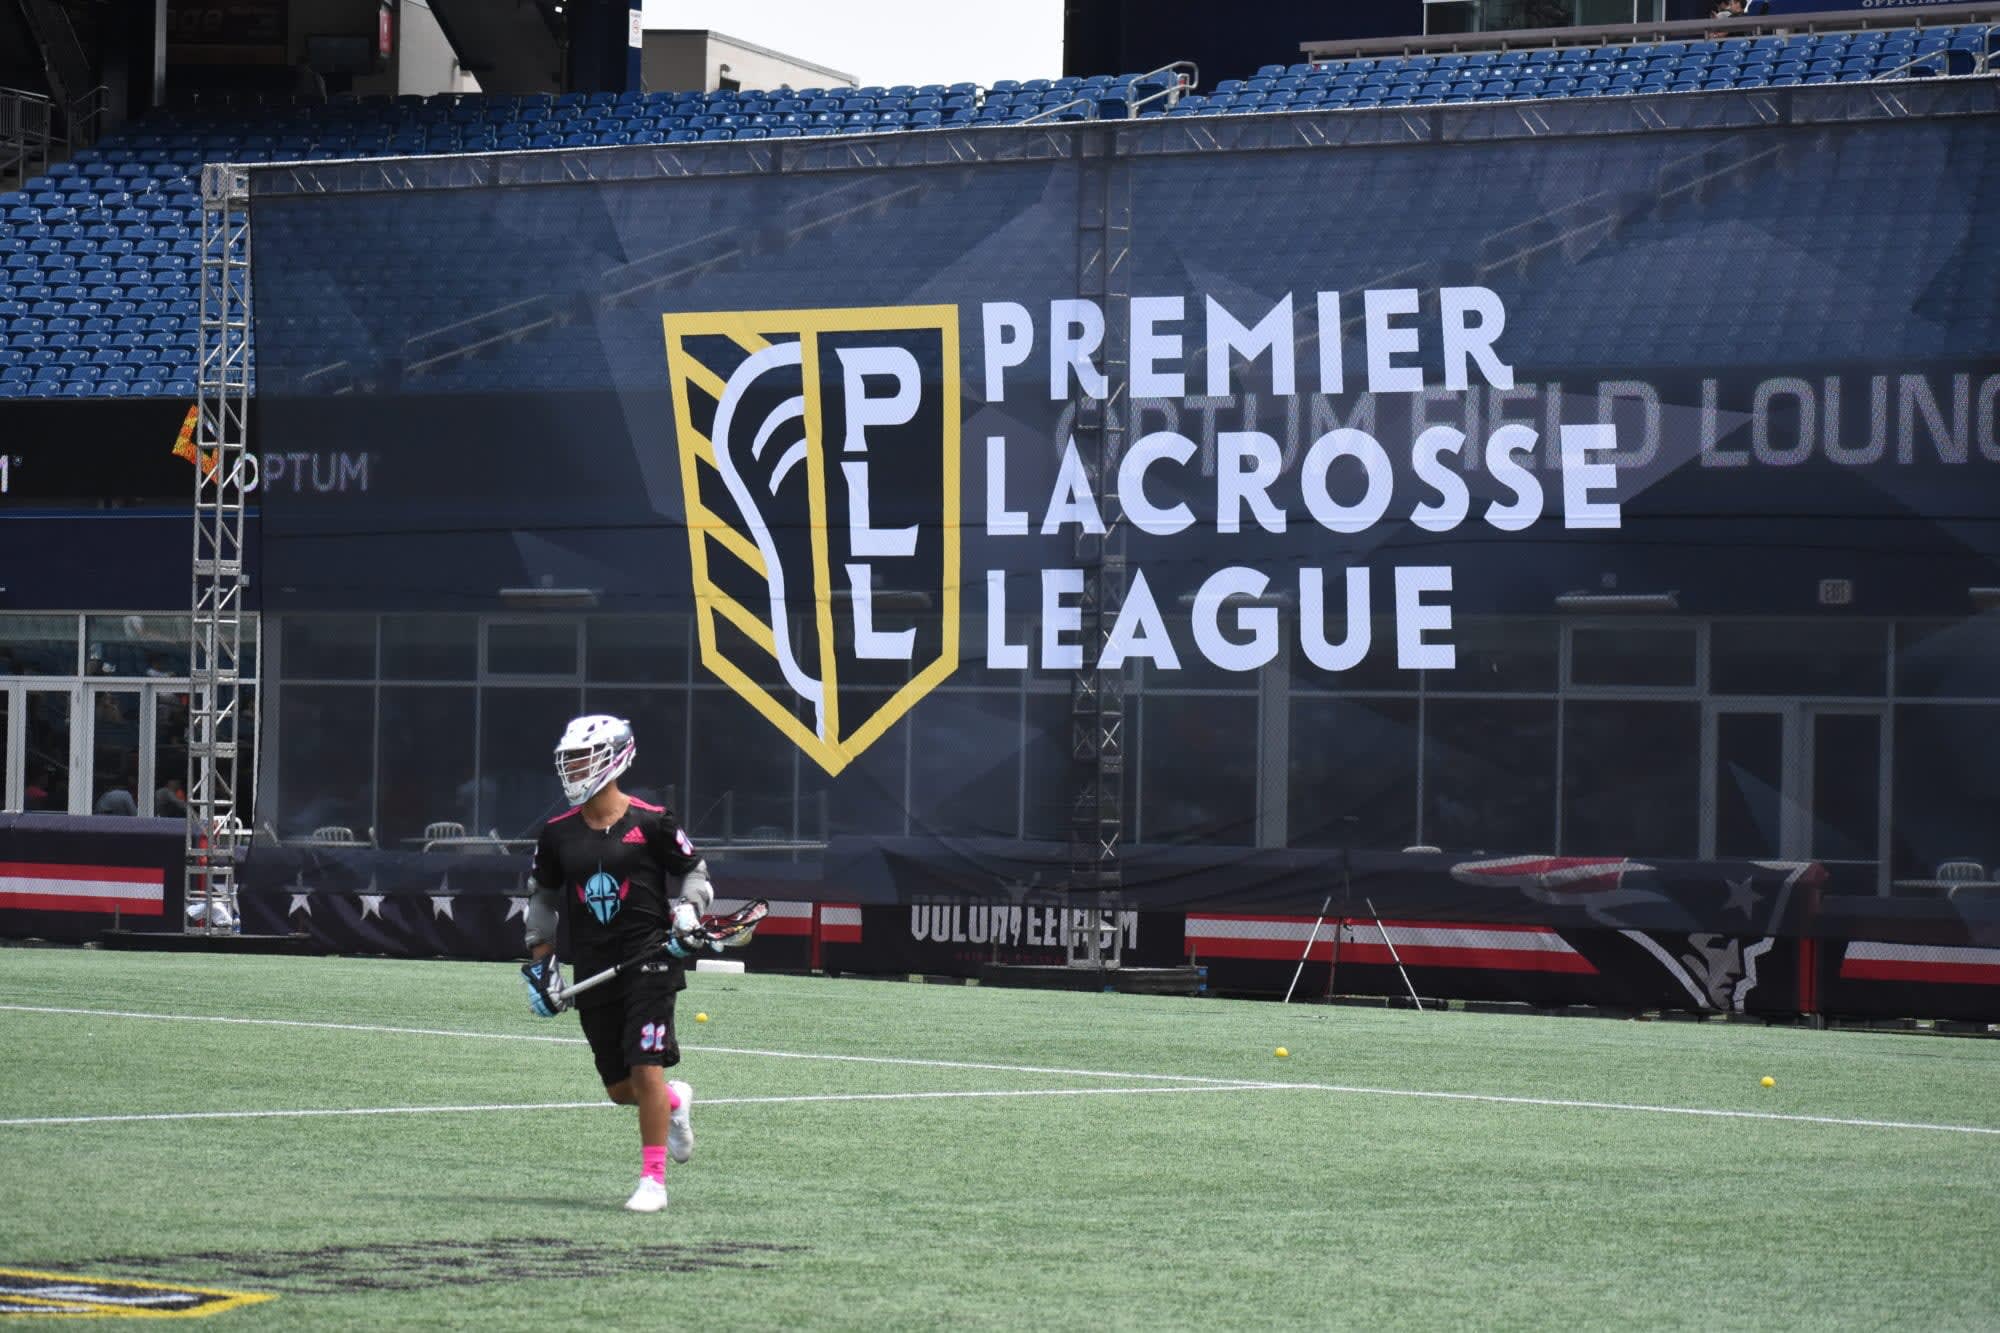 Premier Lacrosse League PLL: Top players, team previews - Sports